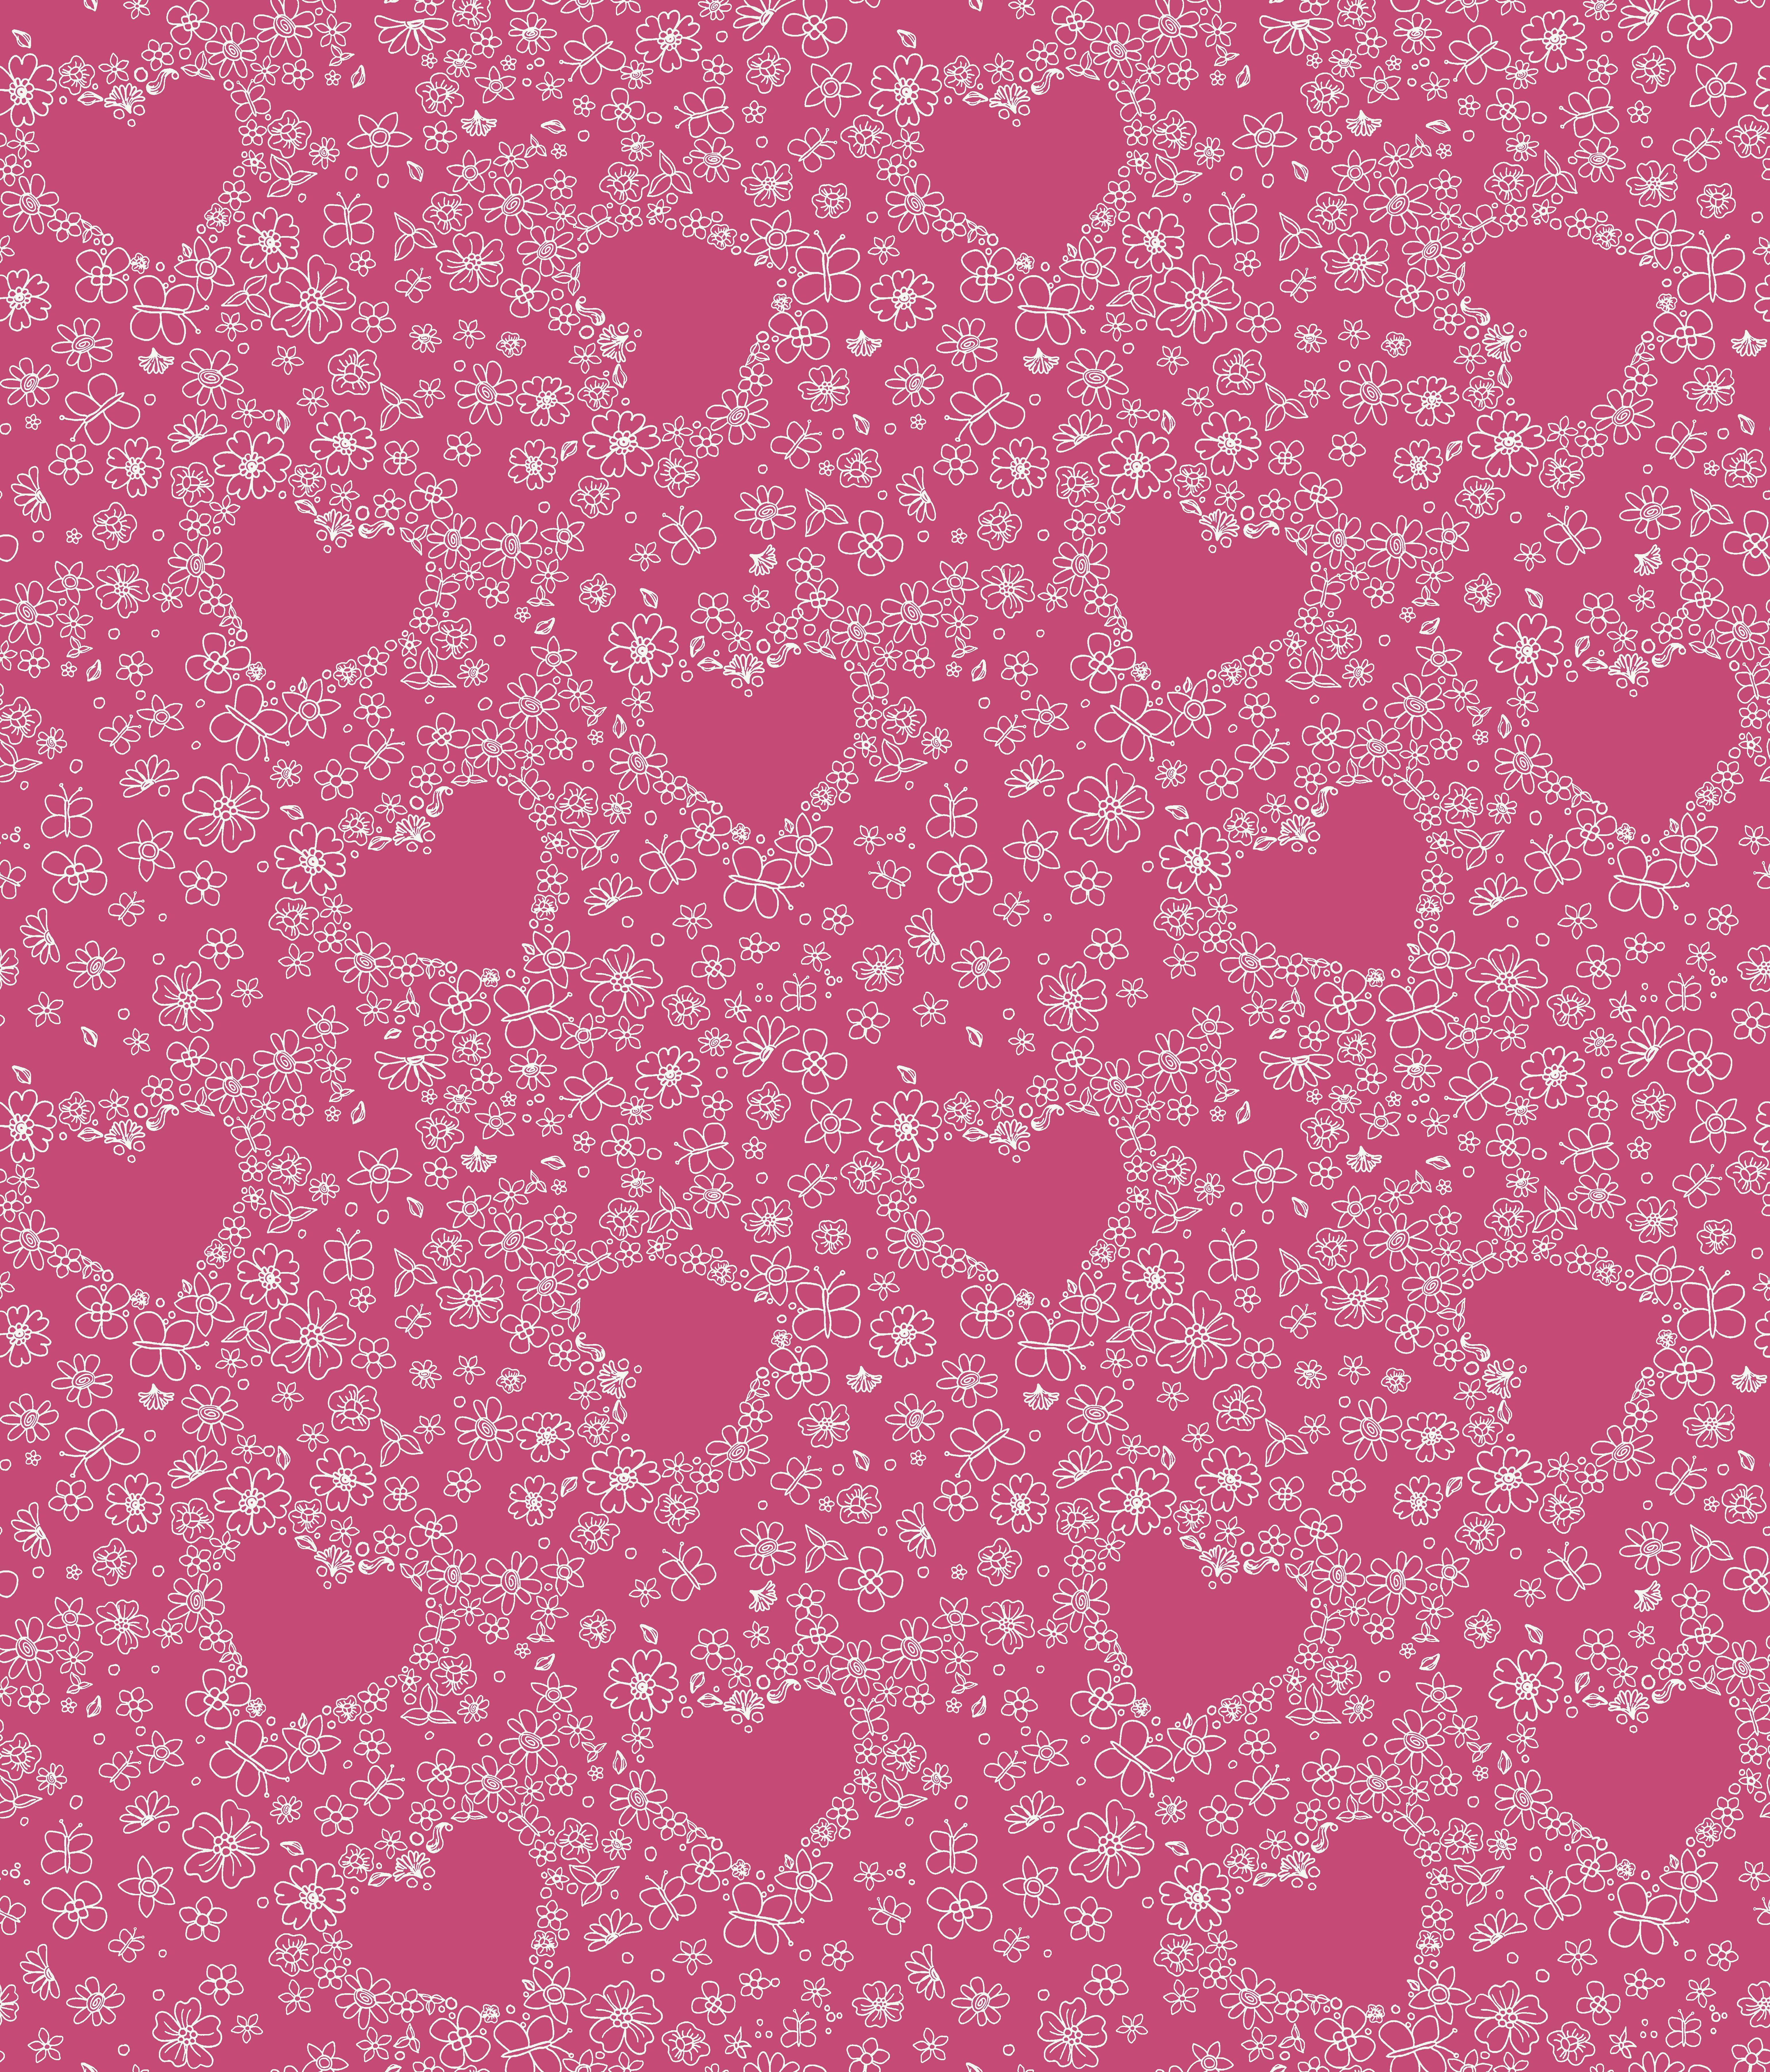 York Wallcovering Disney Princess Pink Hearts Wallpaper